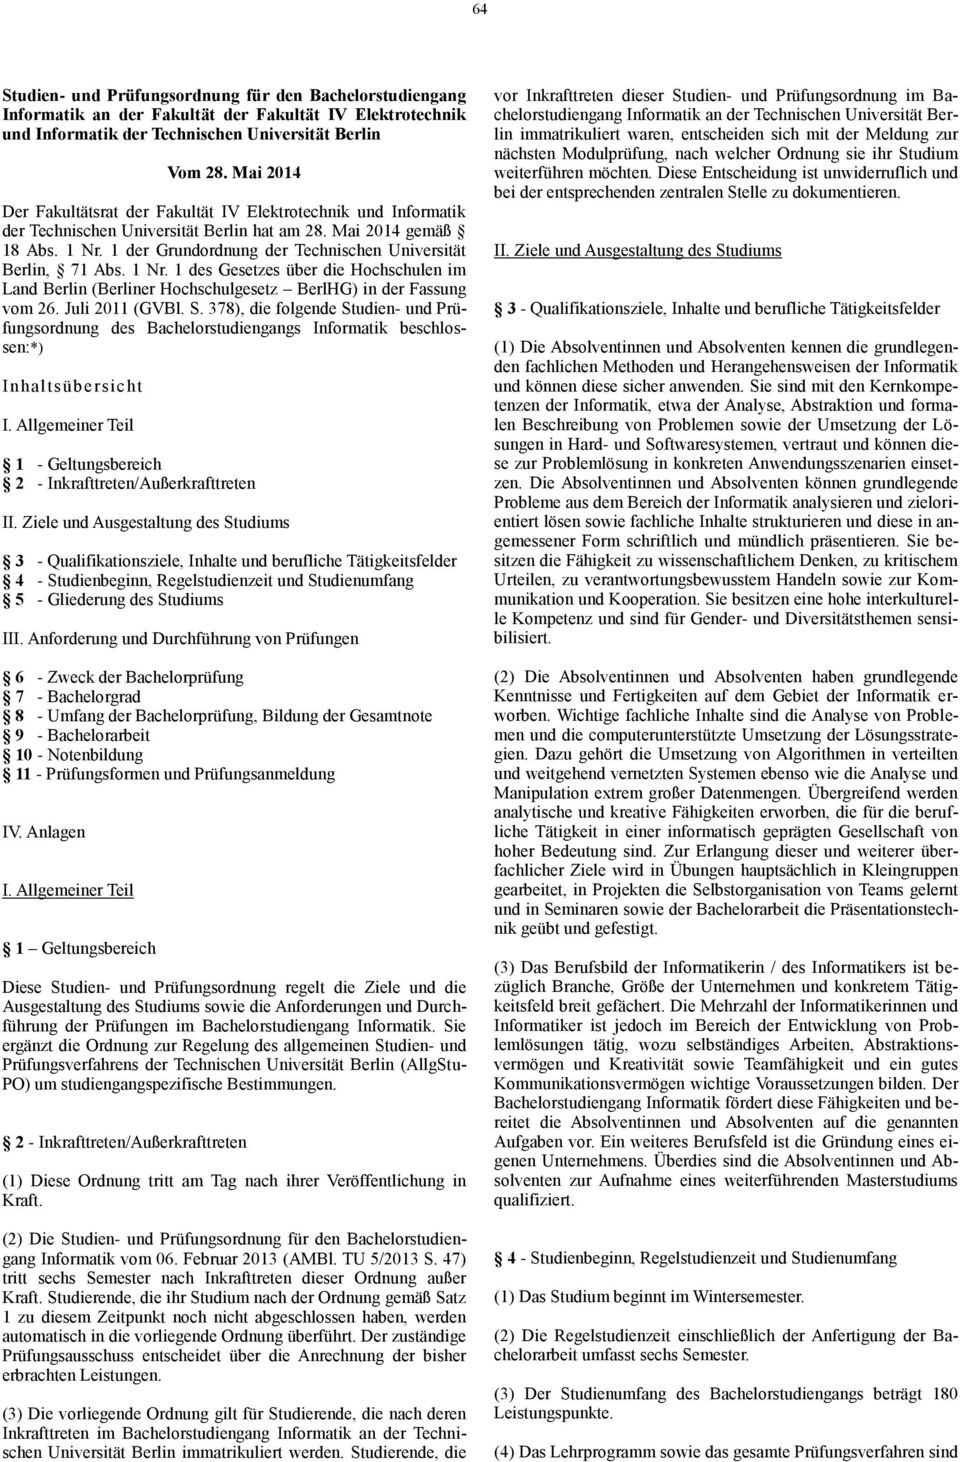 1 Nr. 1 des Gesetzes über die Hochschulen im Land Berlin (Berliner Hochschulgesetz BerlHG) in der Fassung vom 26. Juli 2011 (GVBl. S.